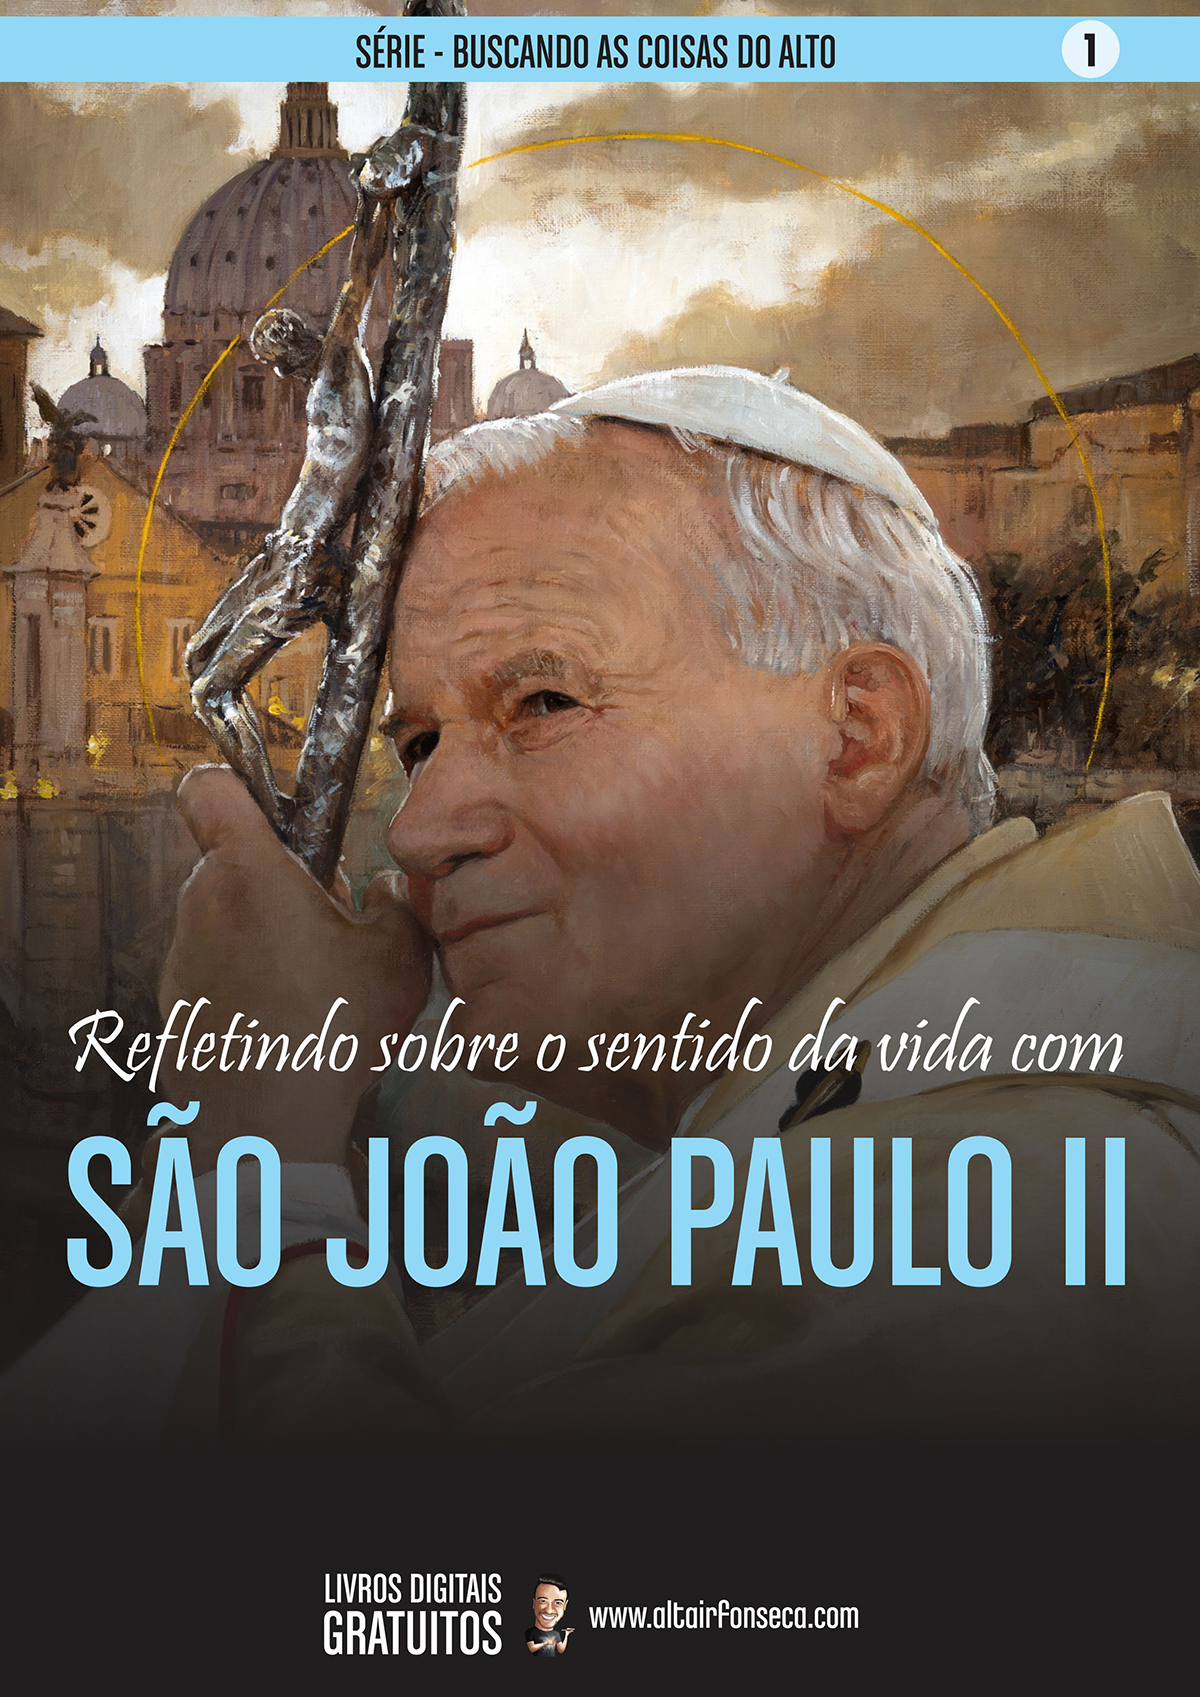 Descubra o sentido da vida com São João Paulo II 